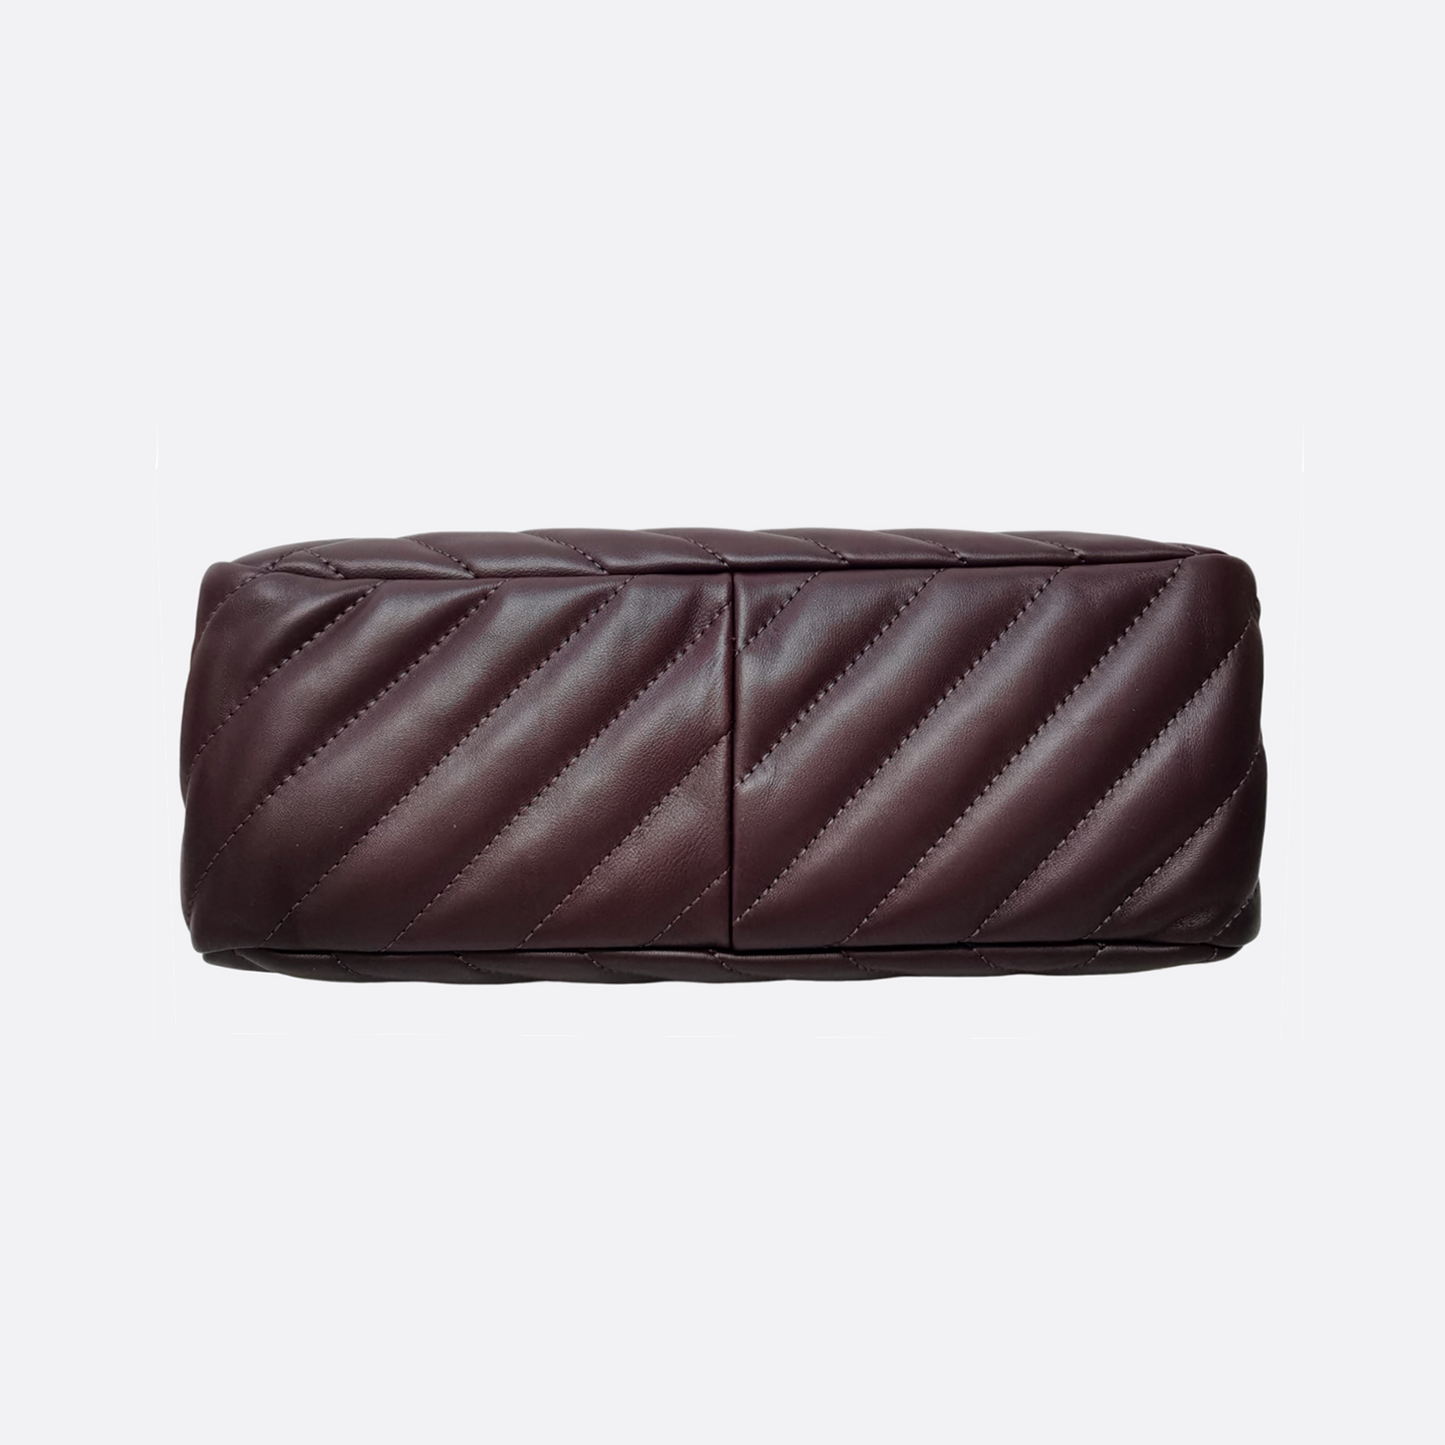 Women's genuine lambskin leather handbag Falten design messenger sling bag